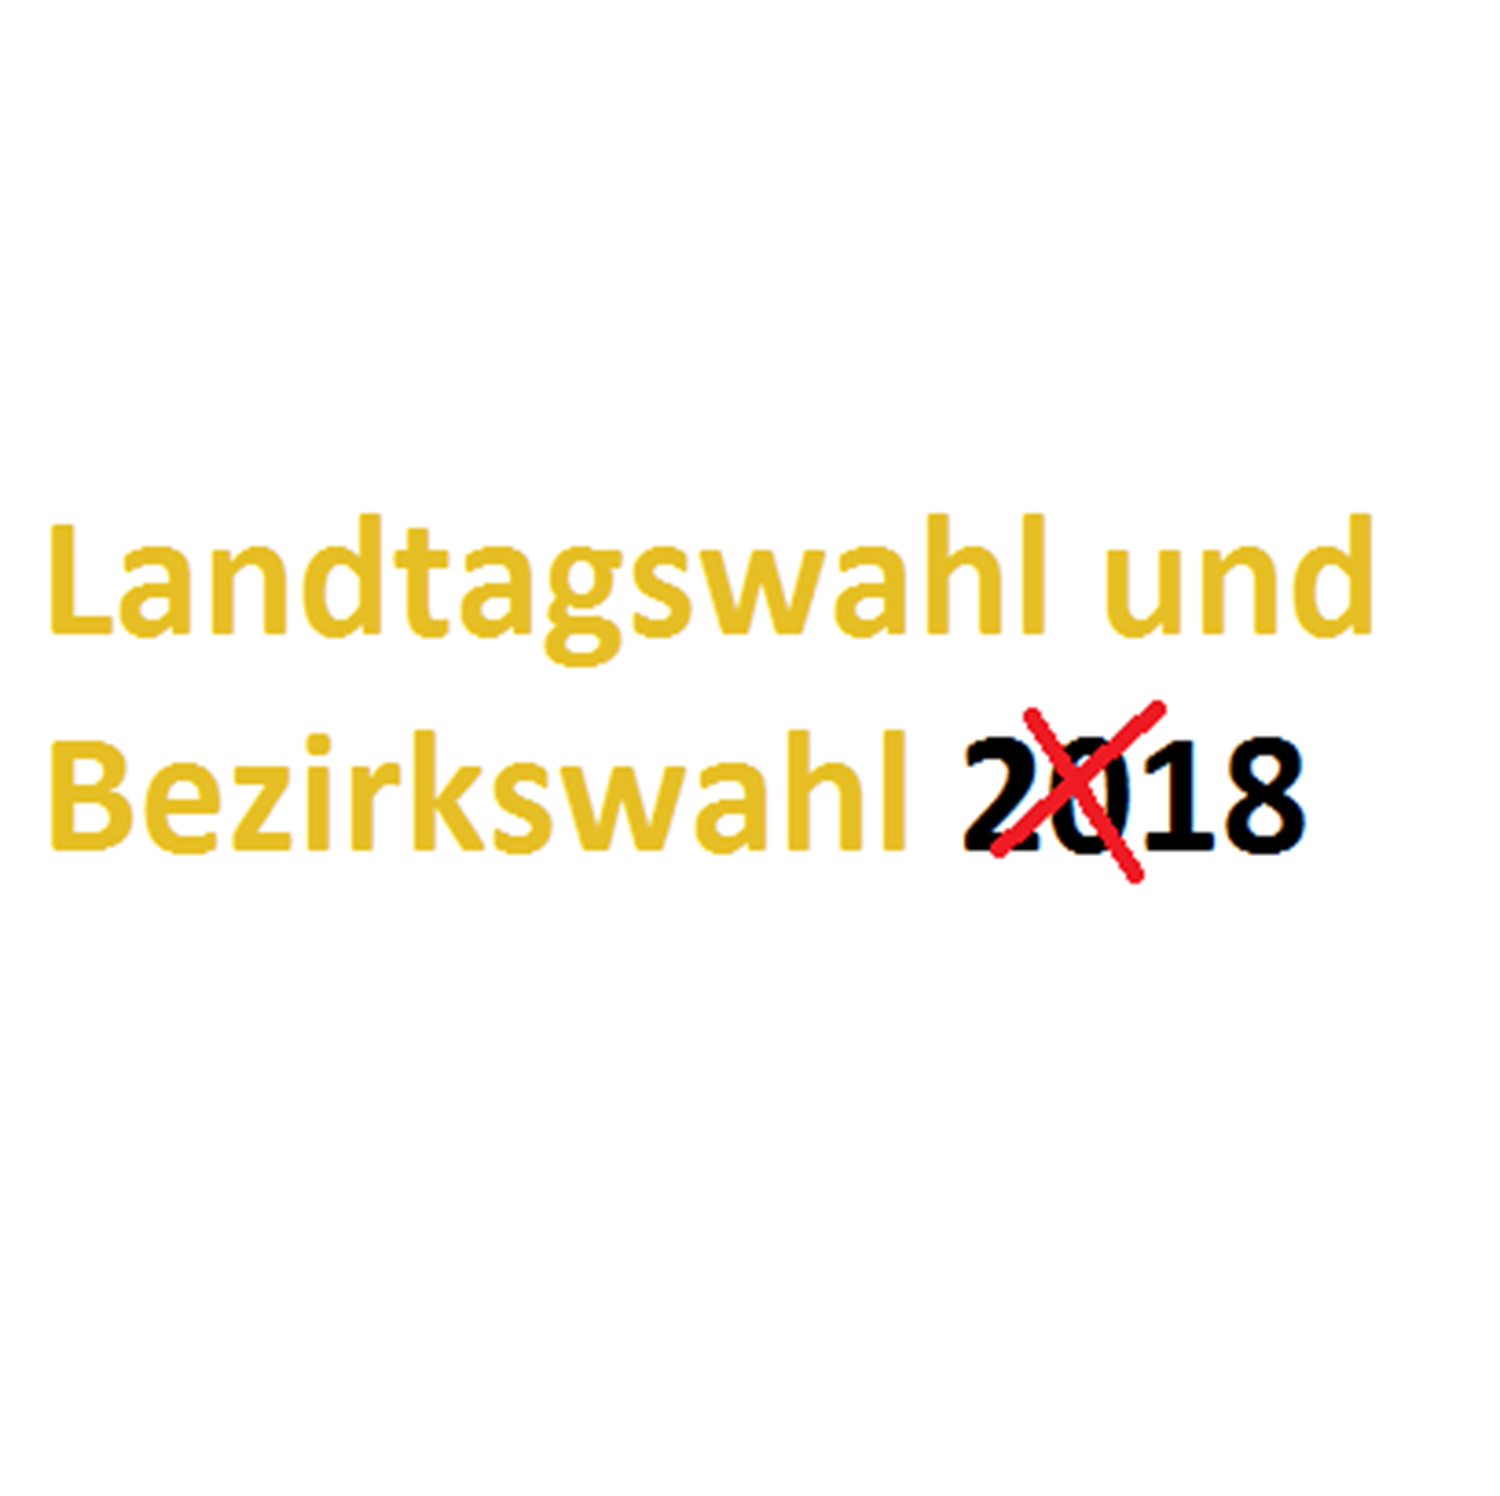 Landtagswahl Und Bezirkswahl 2018 Am 14102018 Wahlscheinantrag